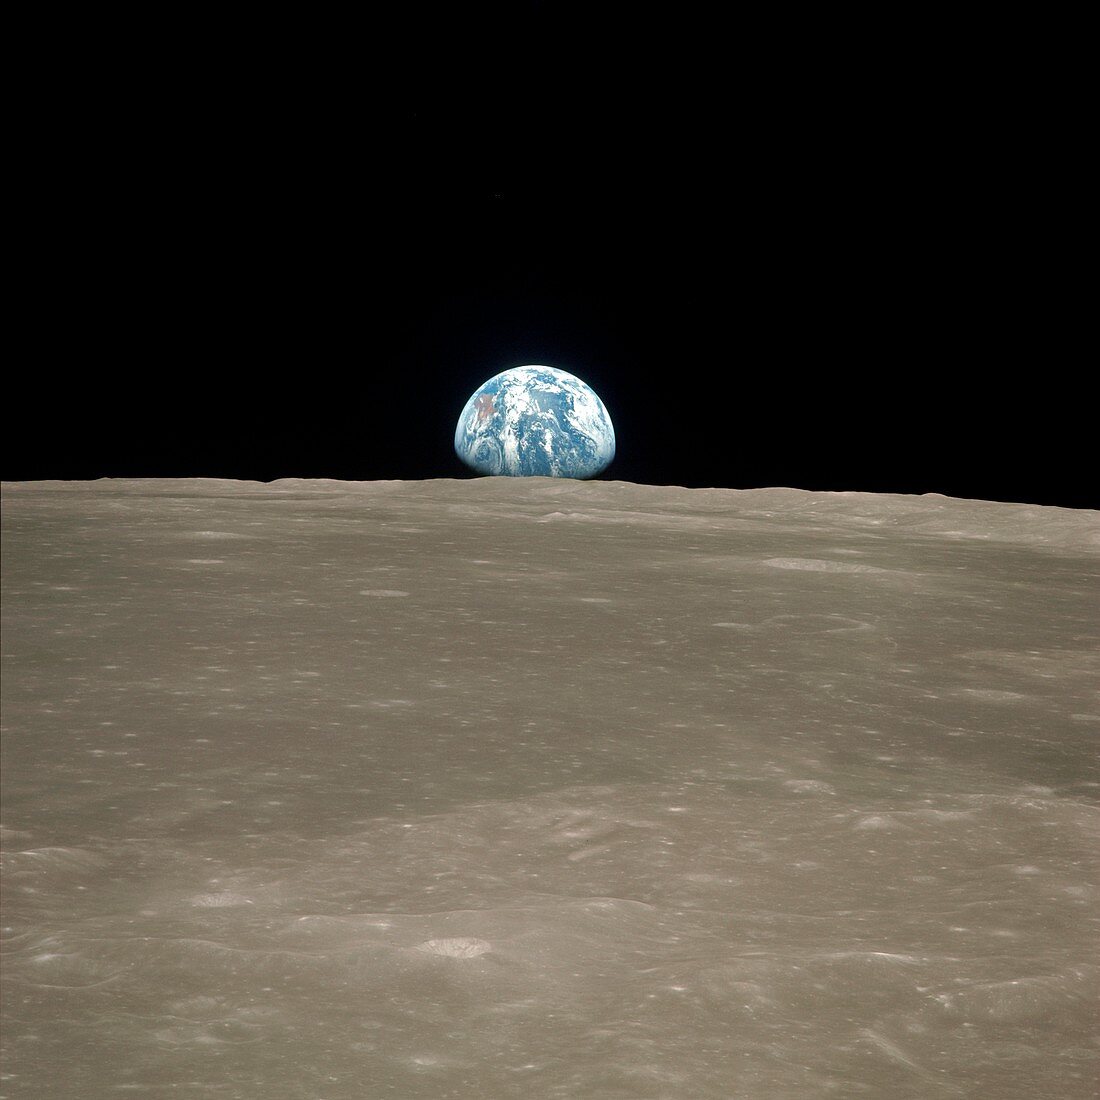 Earthrise over Moon,Apollo 11